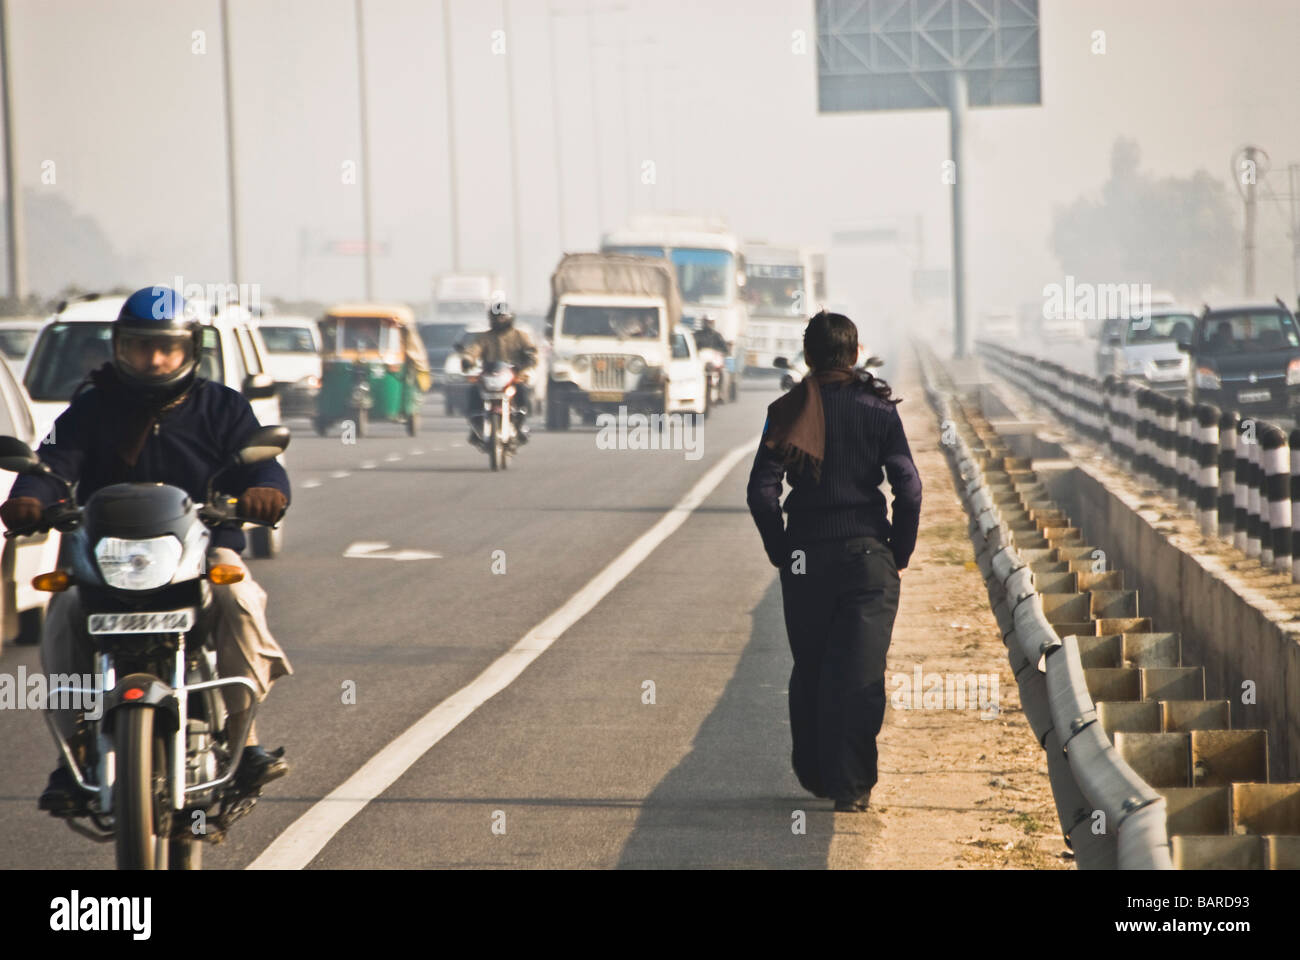 Traffic on the road, Sohna, Gurgaon, Haryana, India Stock Photo